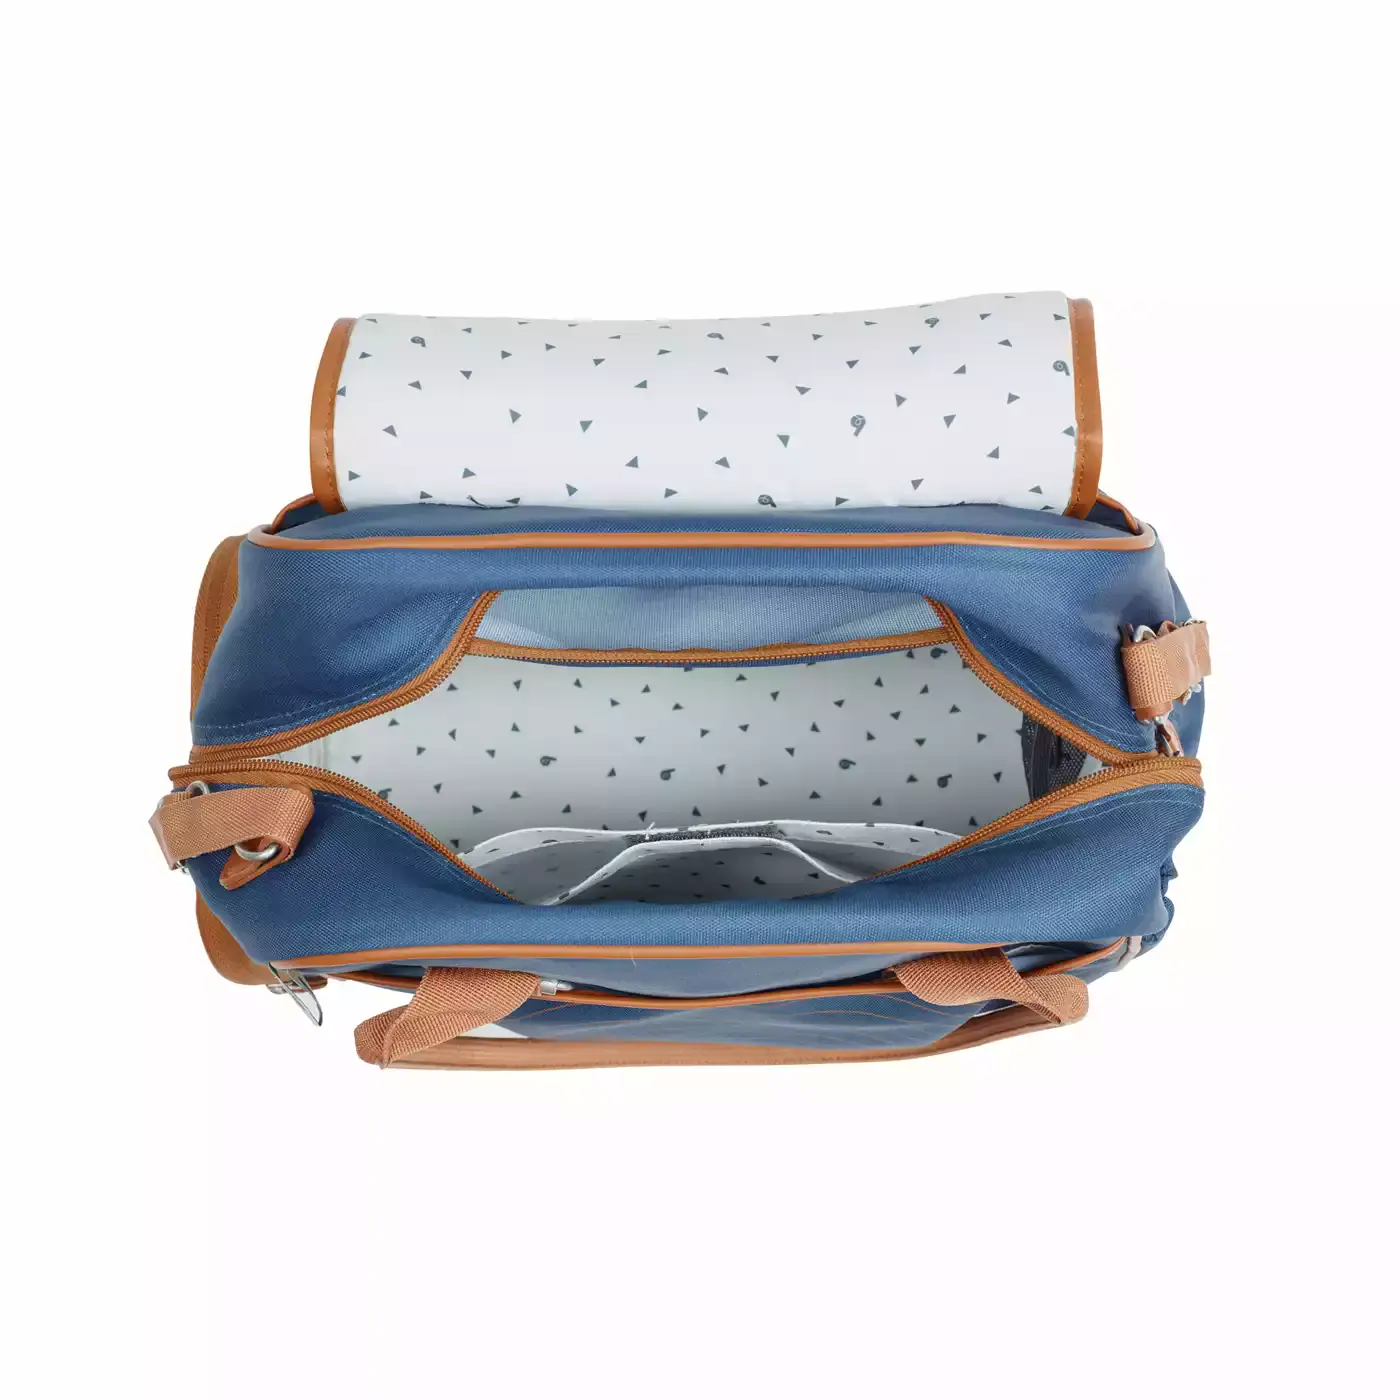 Wickeltasche Style Bag Blue Navy babymoov Blau 2000565168519 7